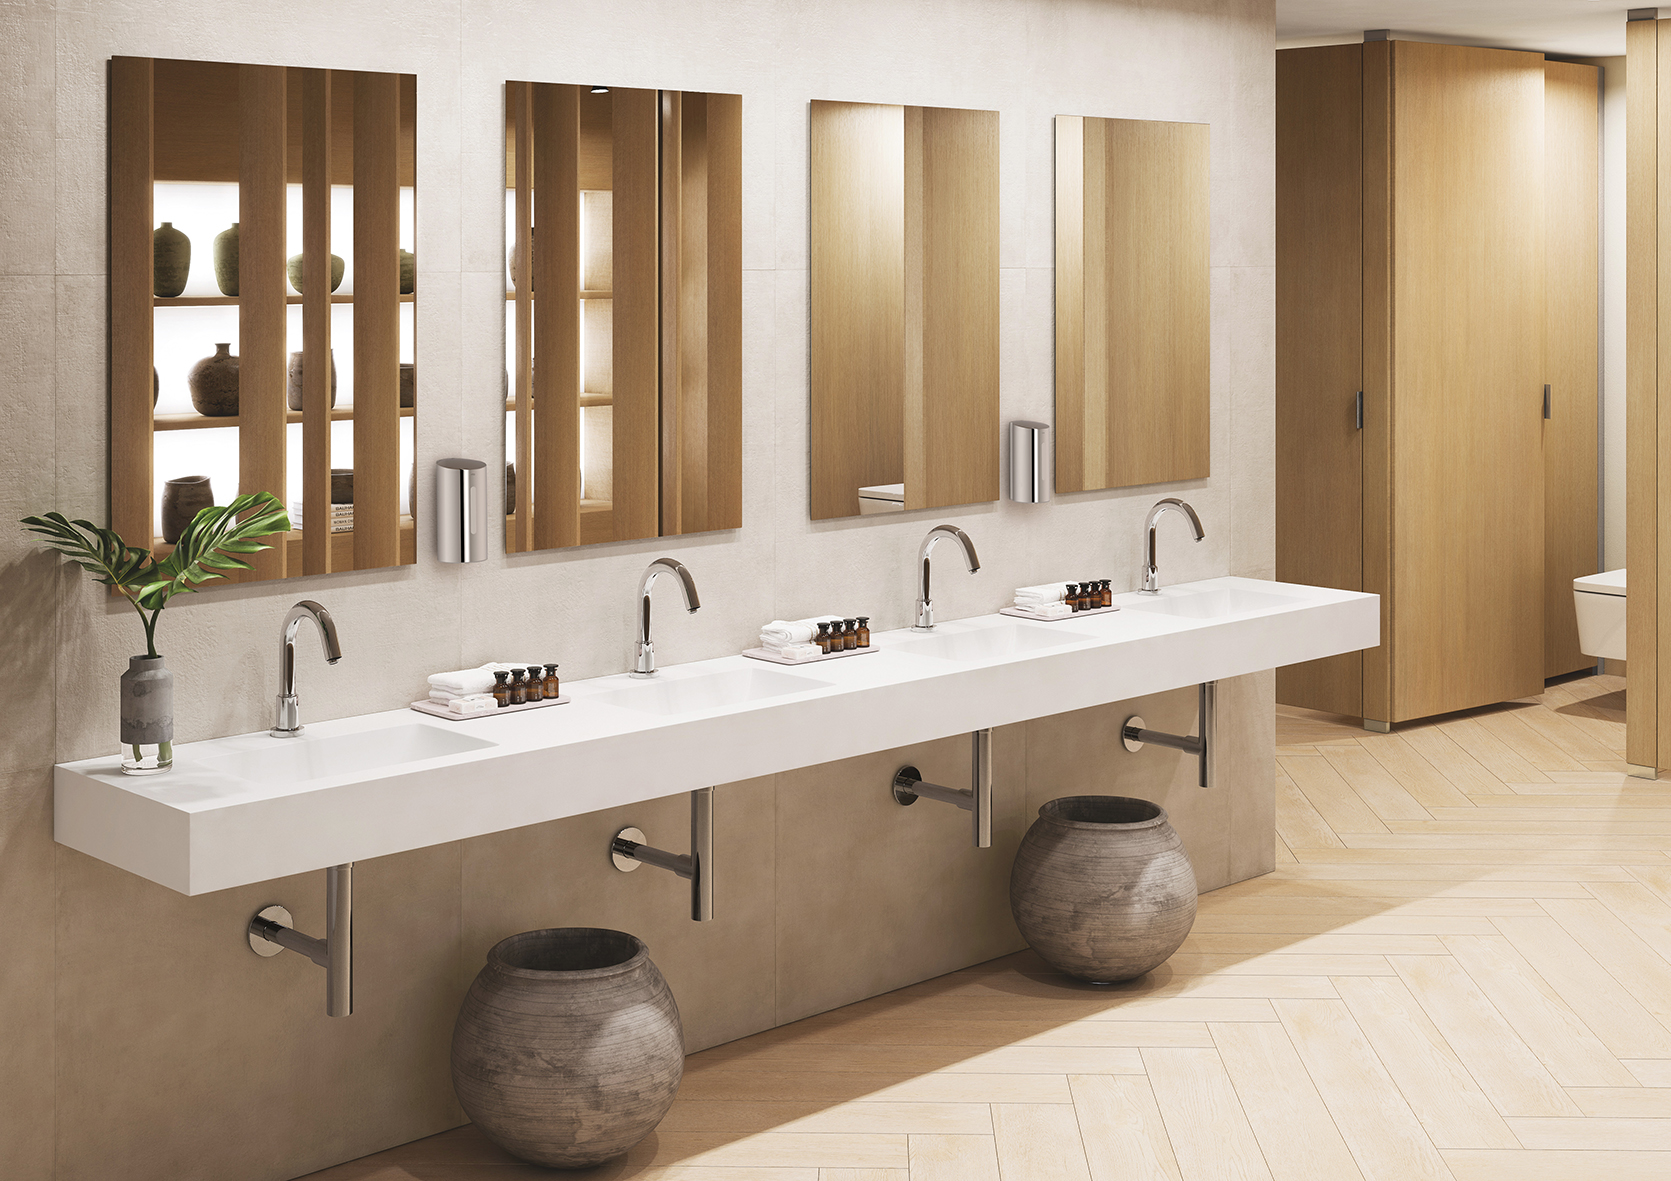 Roca apresenta uma variedade de soluções touchless, entre outras novidades, para os espaços de banho da atualidade